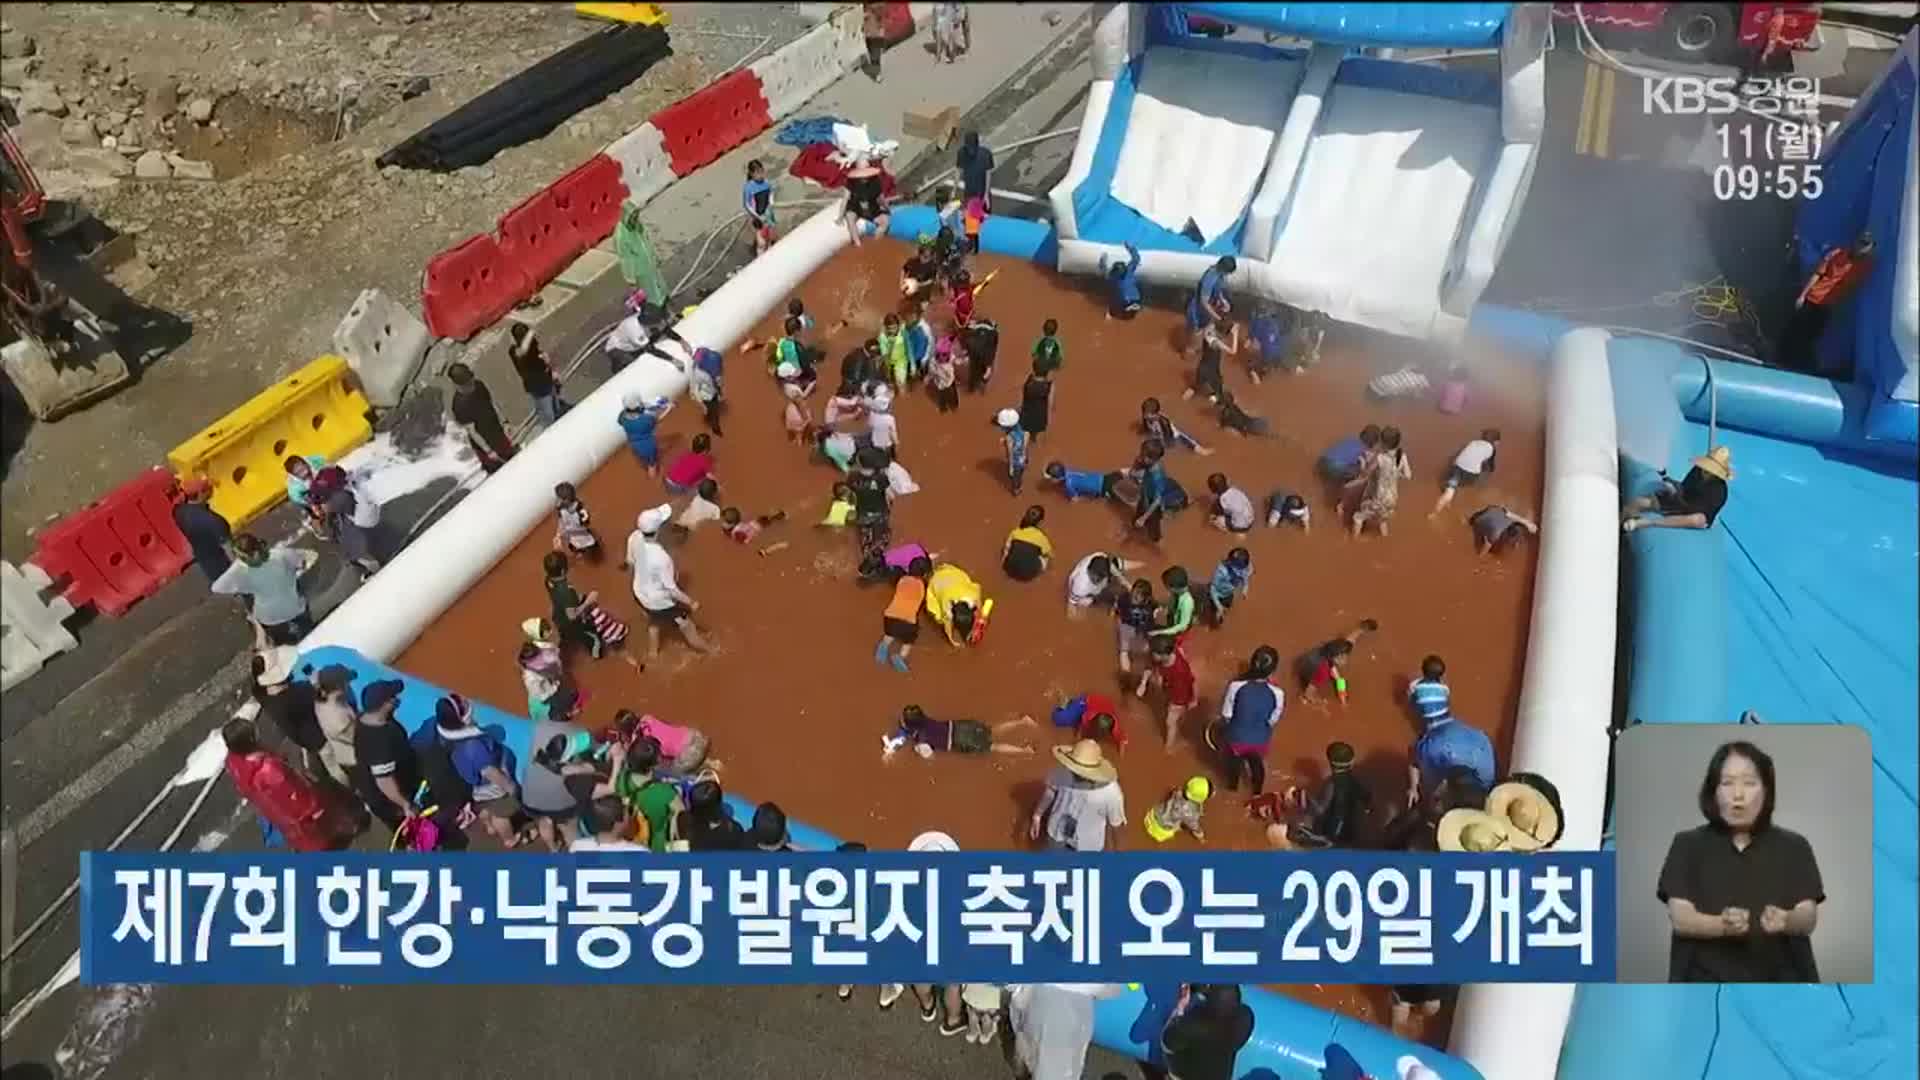 제7회 한강·낙동강 발원지 축제 오는 29일 개최